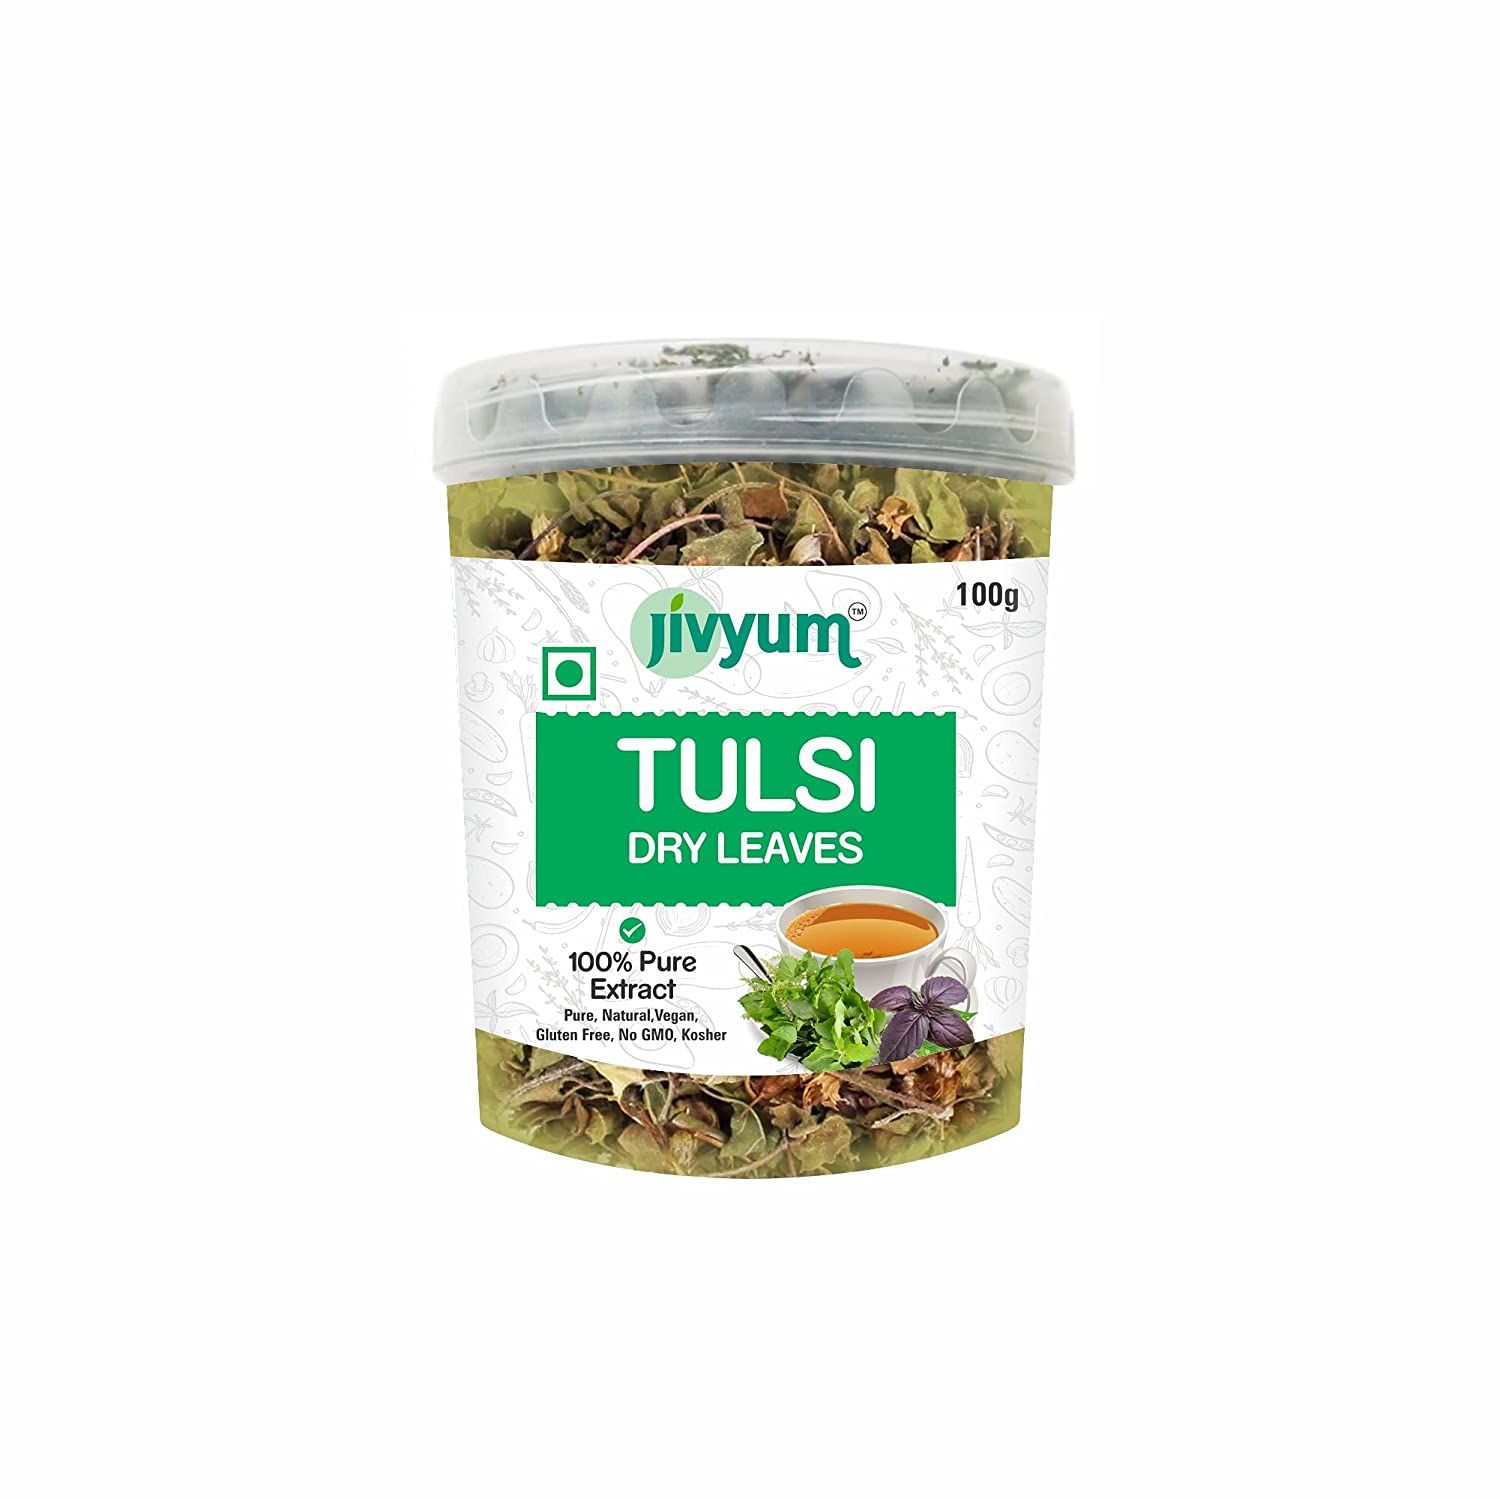 Jivyum Tulsi Dry Leaves Image